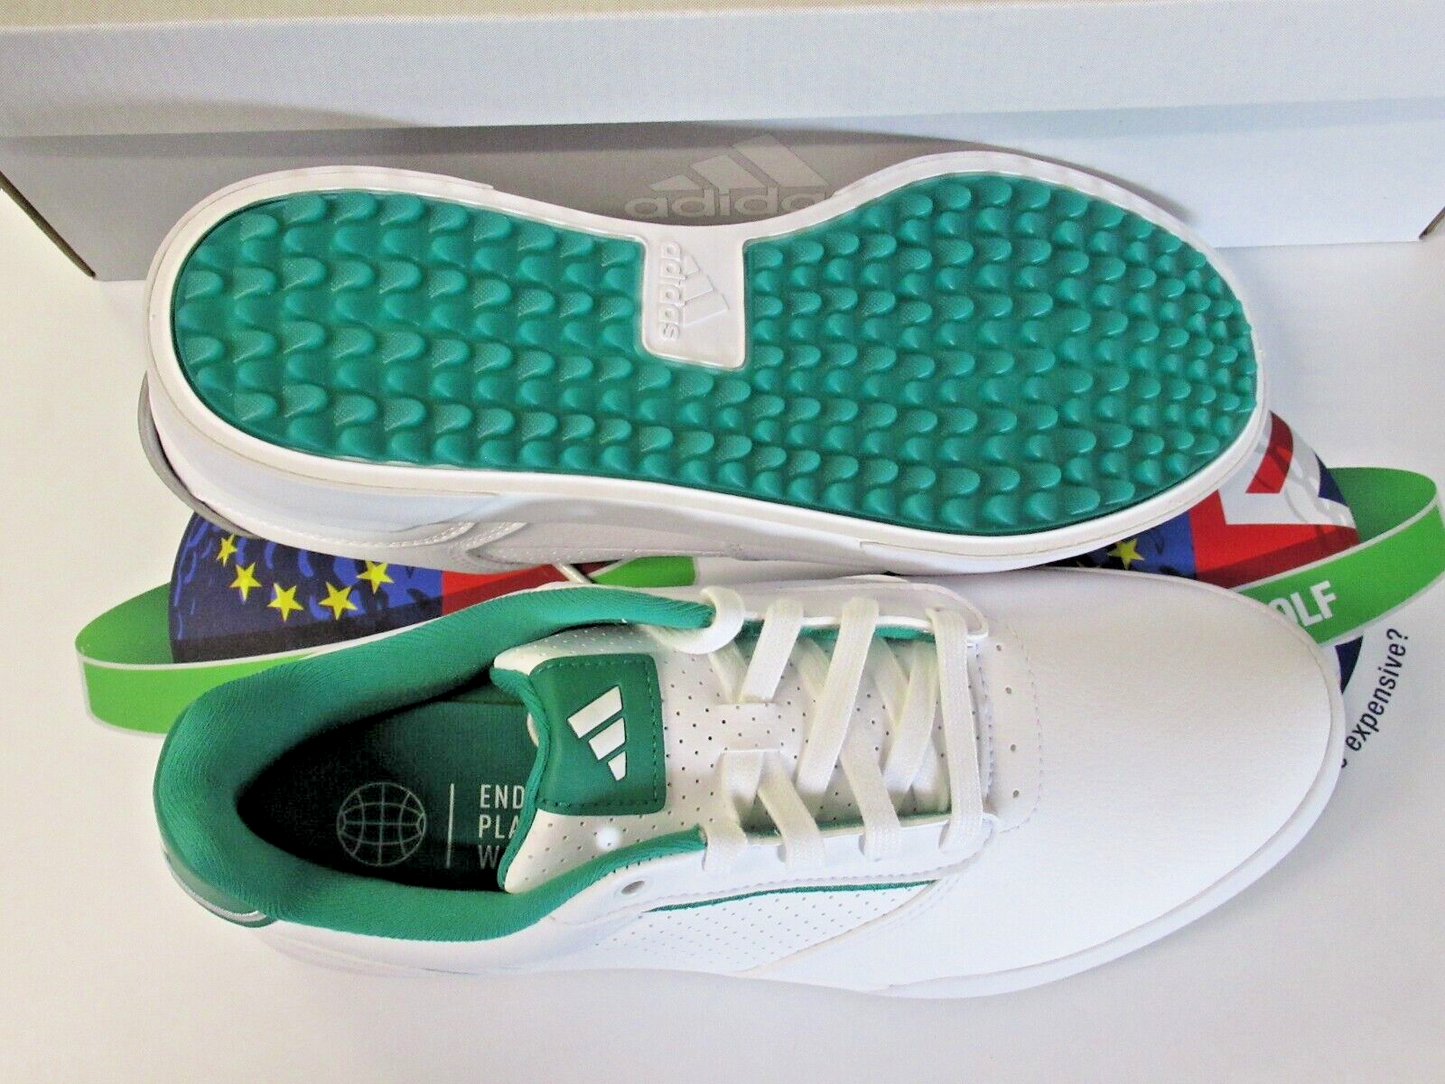 adidas retrocross white/green waterproof golf shoes uk size 11 wide